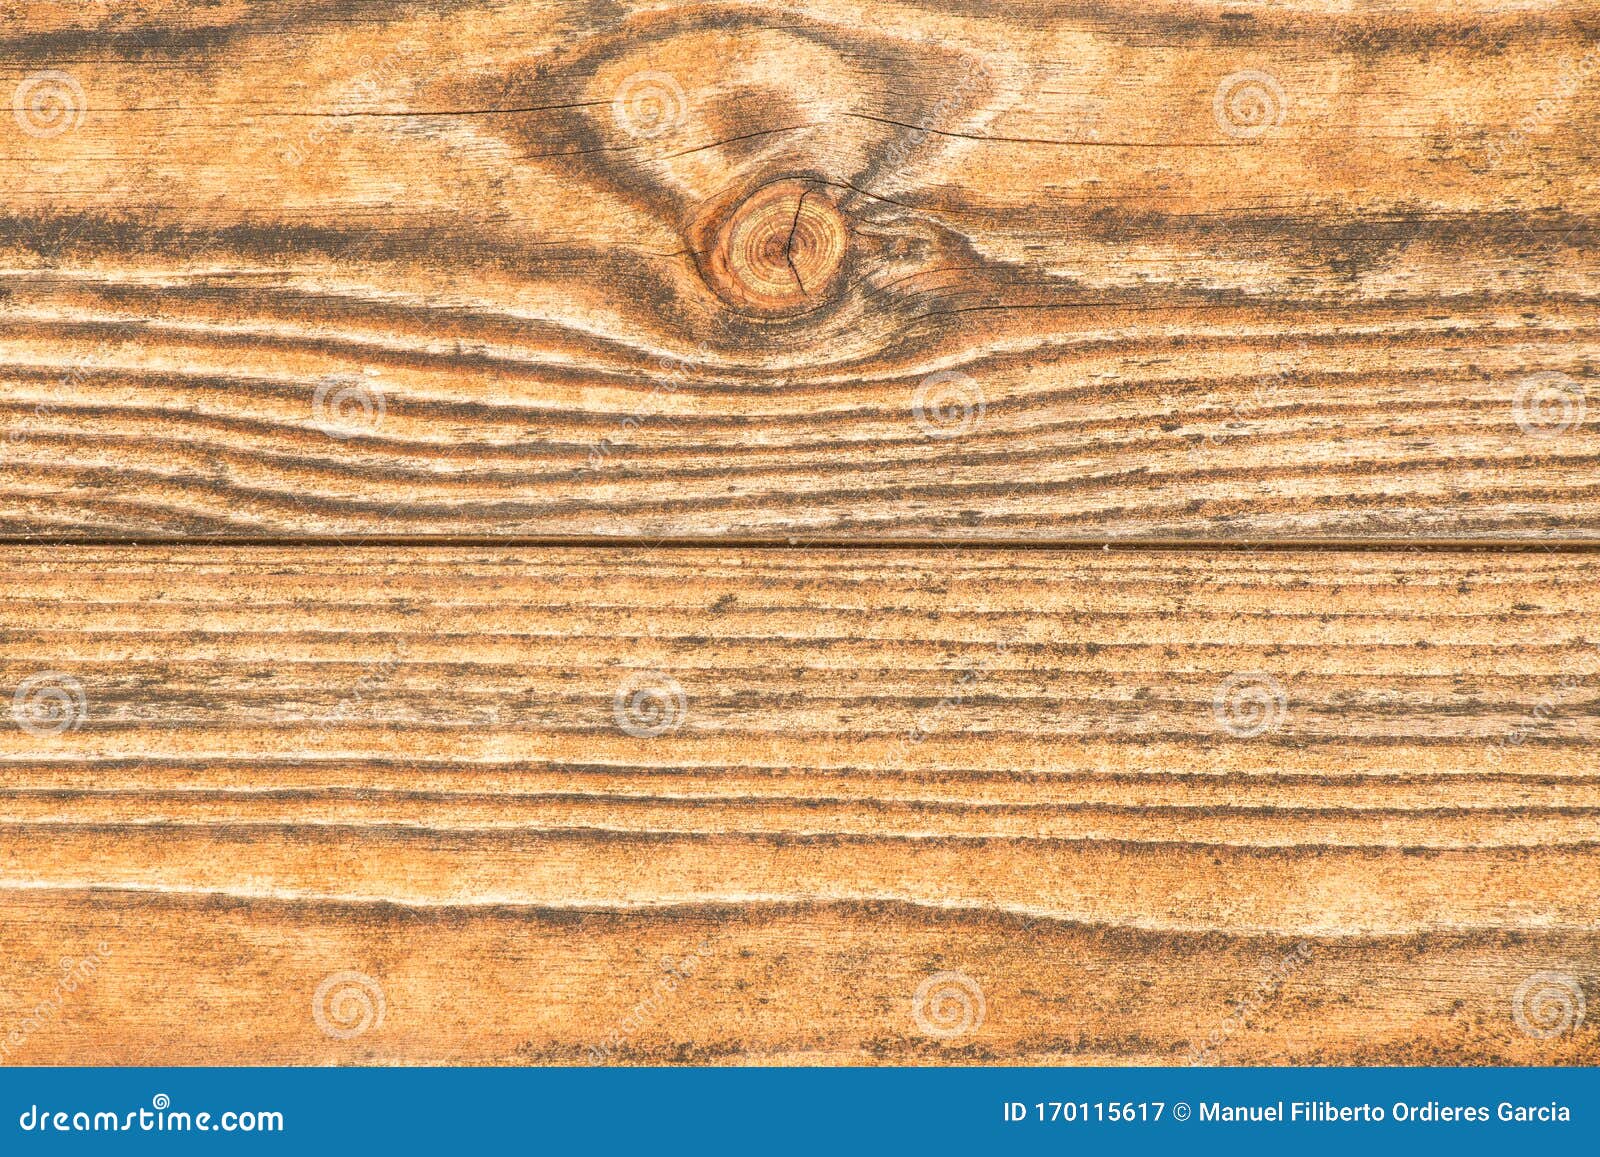 textura de madera horizontal